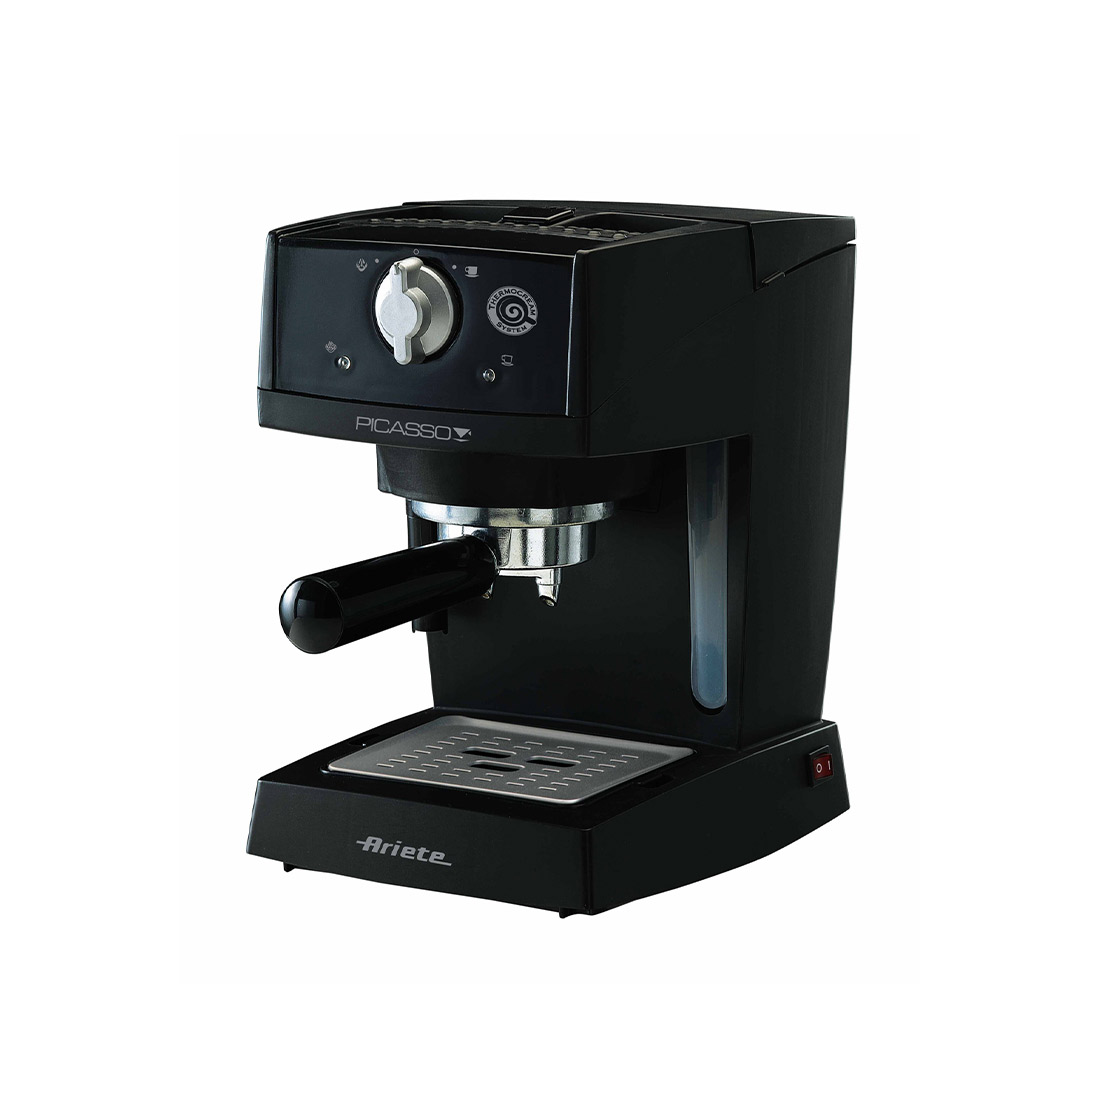 قهوه ساز و اسپرسو ساز آریته مدل AR 1365